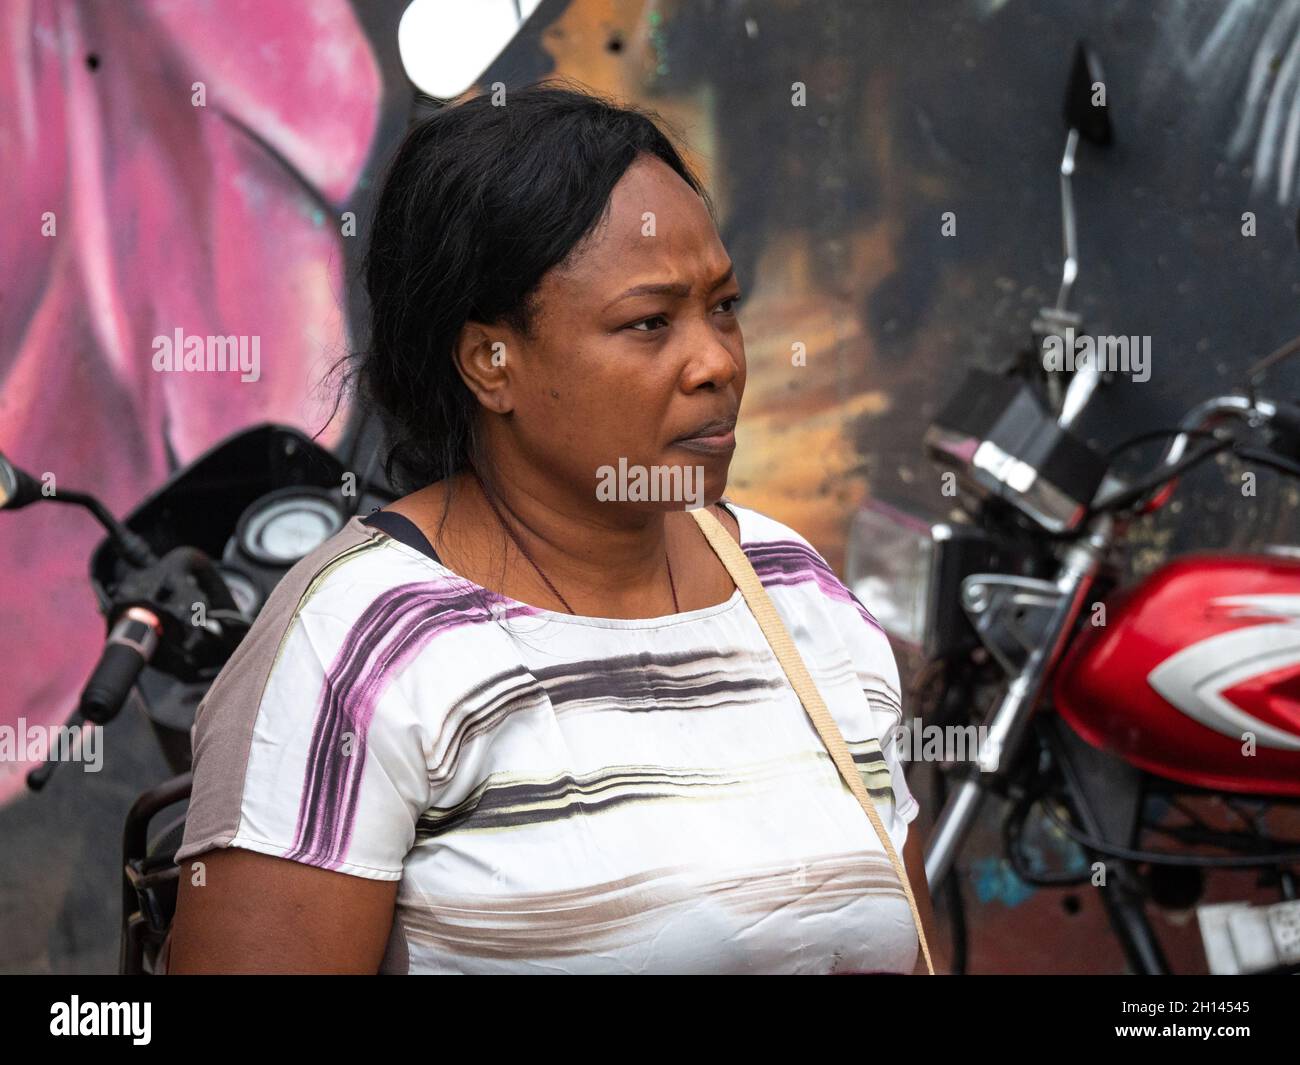 Medellin, Antioquia Colombie - janvier 6 2021: La femme noire latine attend son mari contre fond urbain Banque D'Images